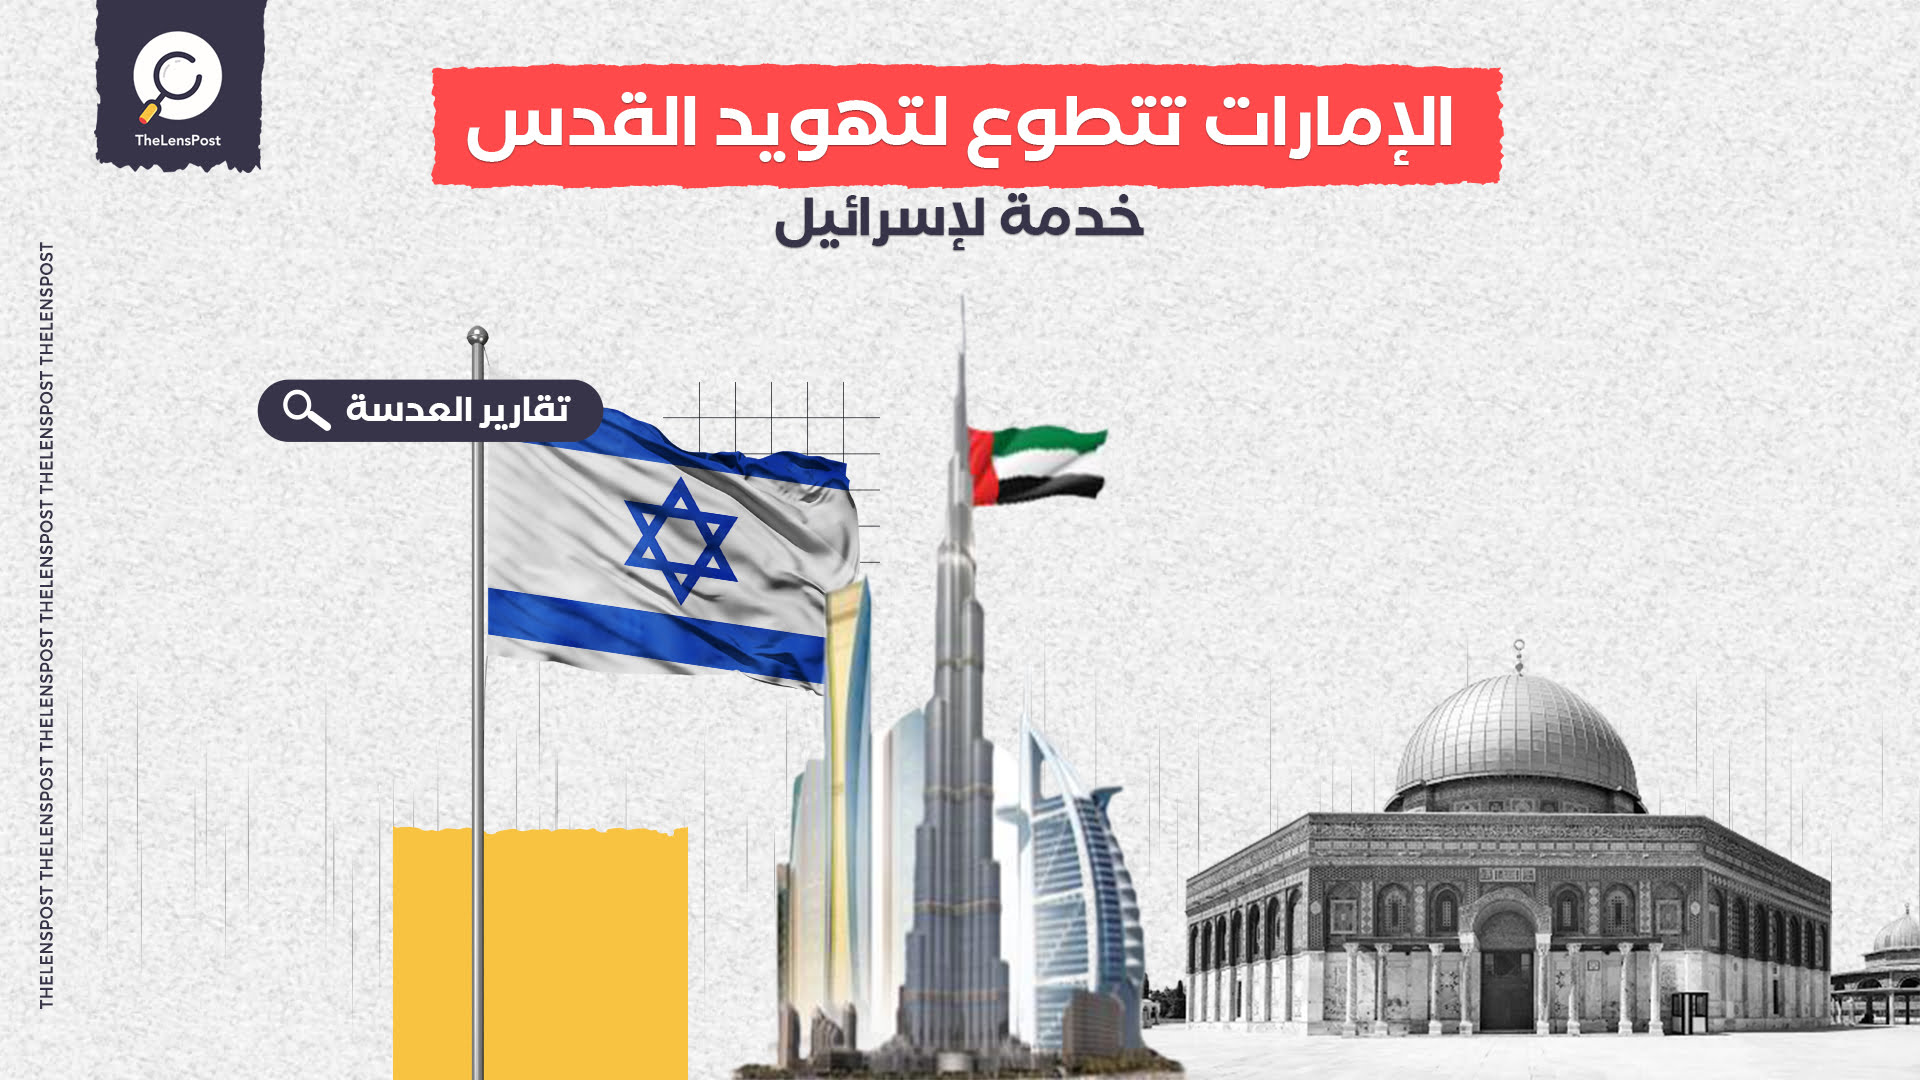 الإمارات تتطوع لتهويد القدس ودعم الاستيطان خدمة لإسرائيل